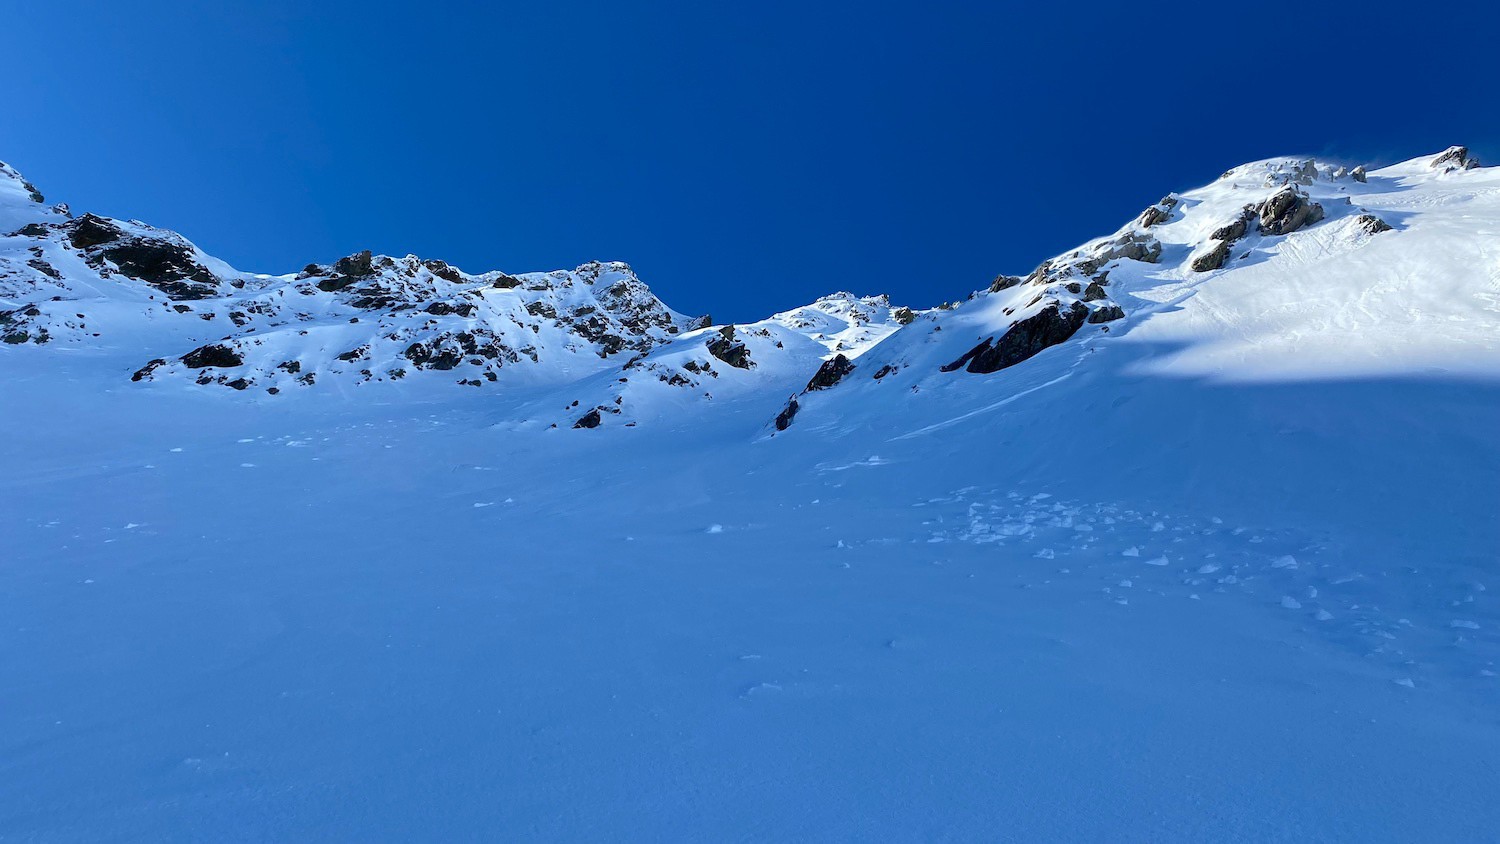 Le ski trouvé est au pied du couloir de droite, en arrière-plan, celui qui prend le soleil sur le haut.